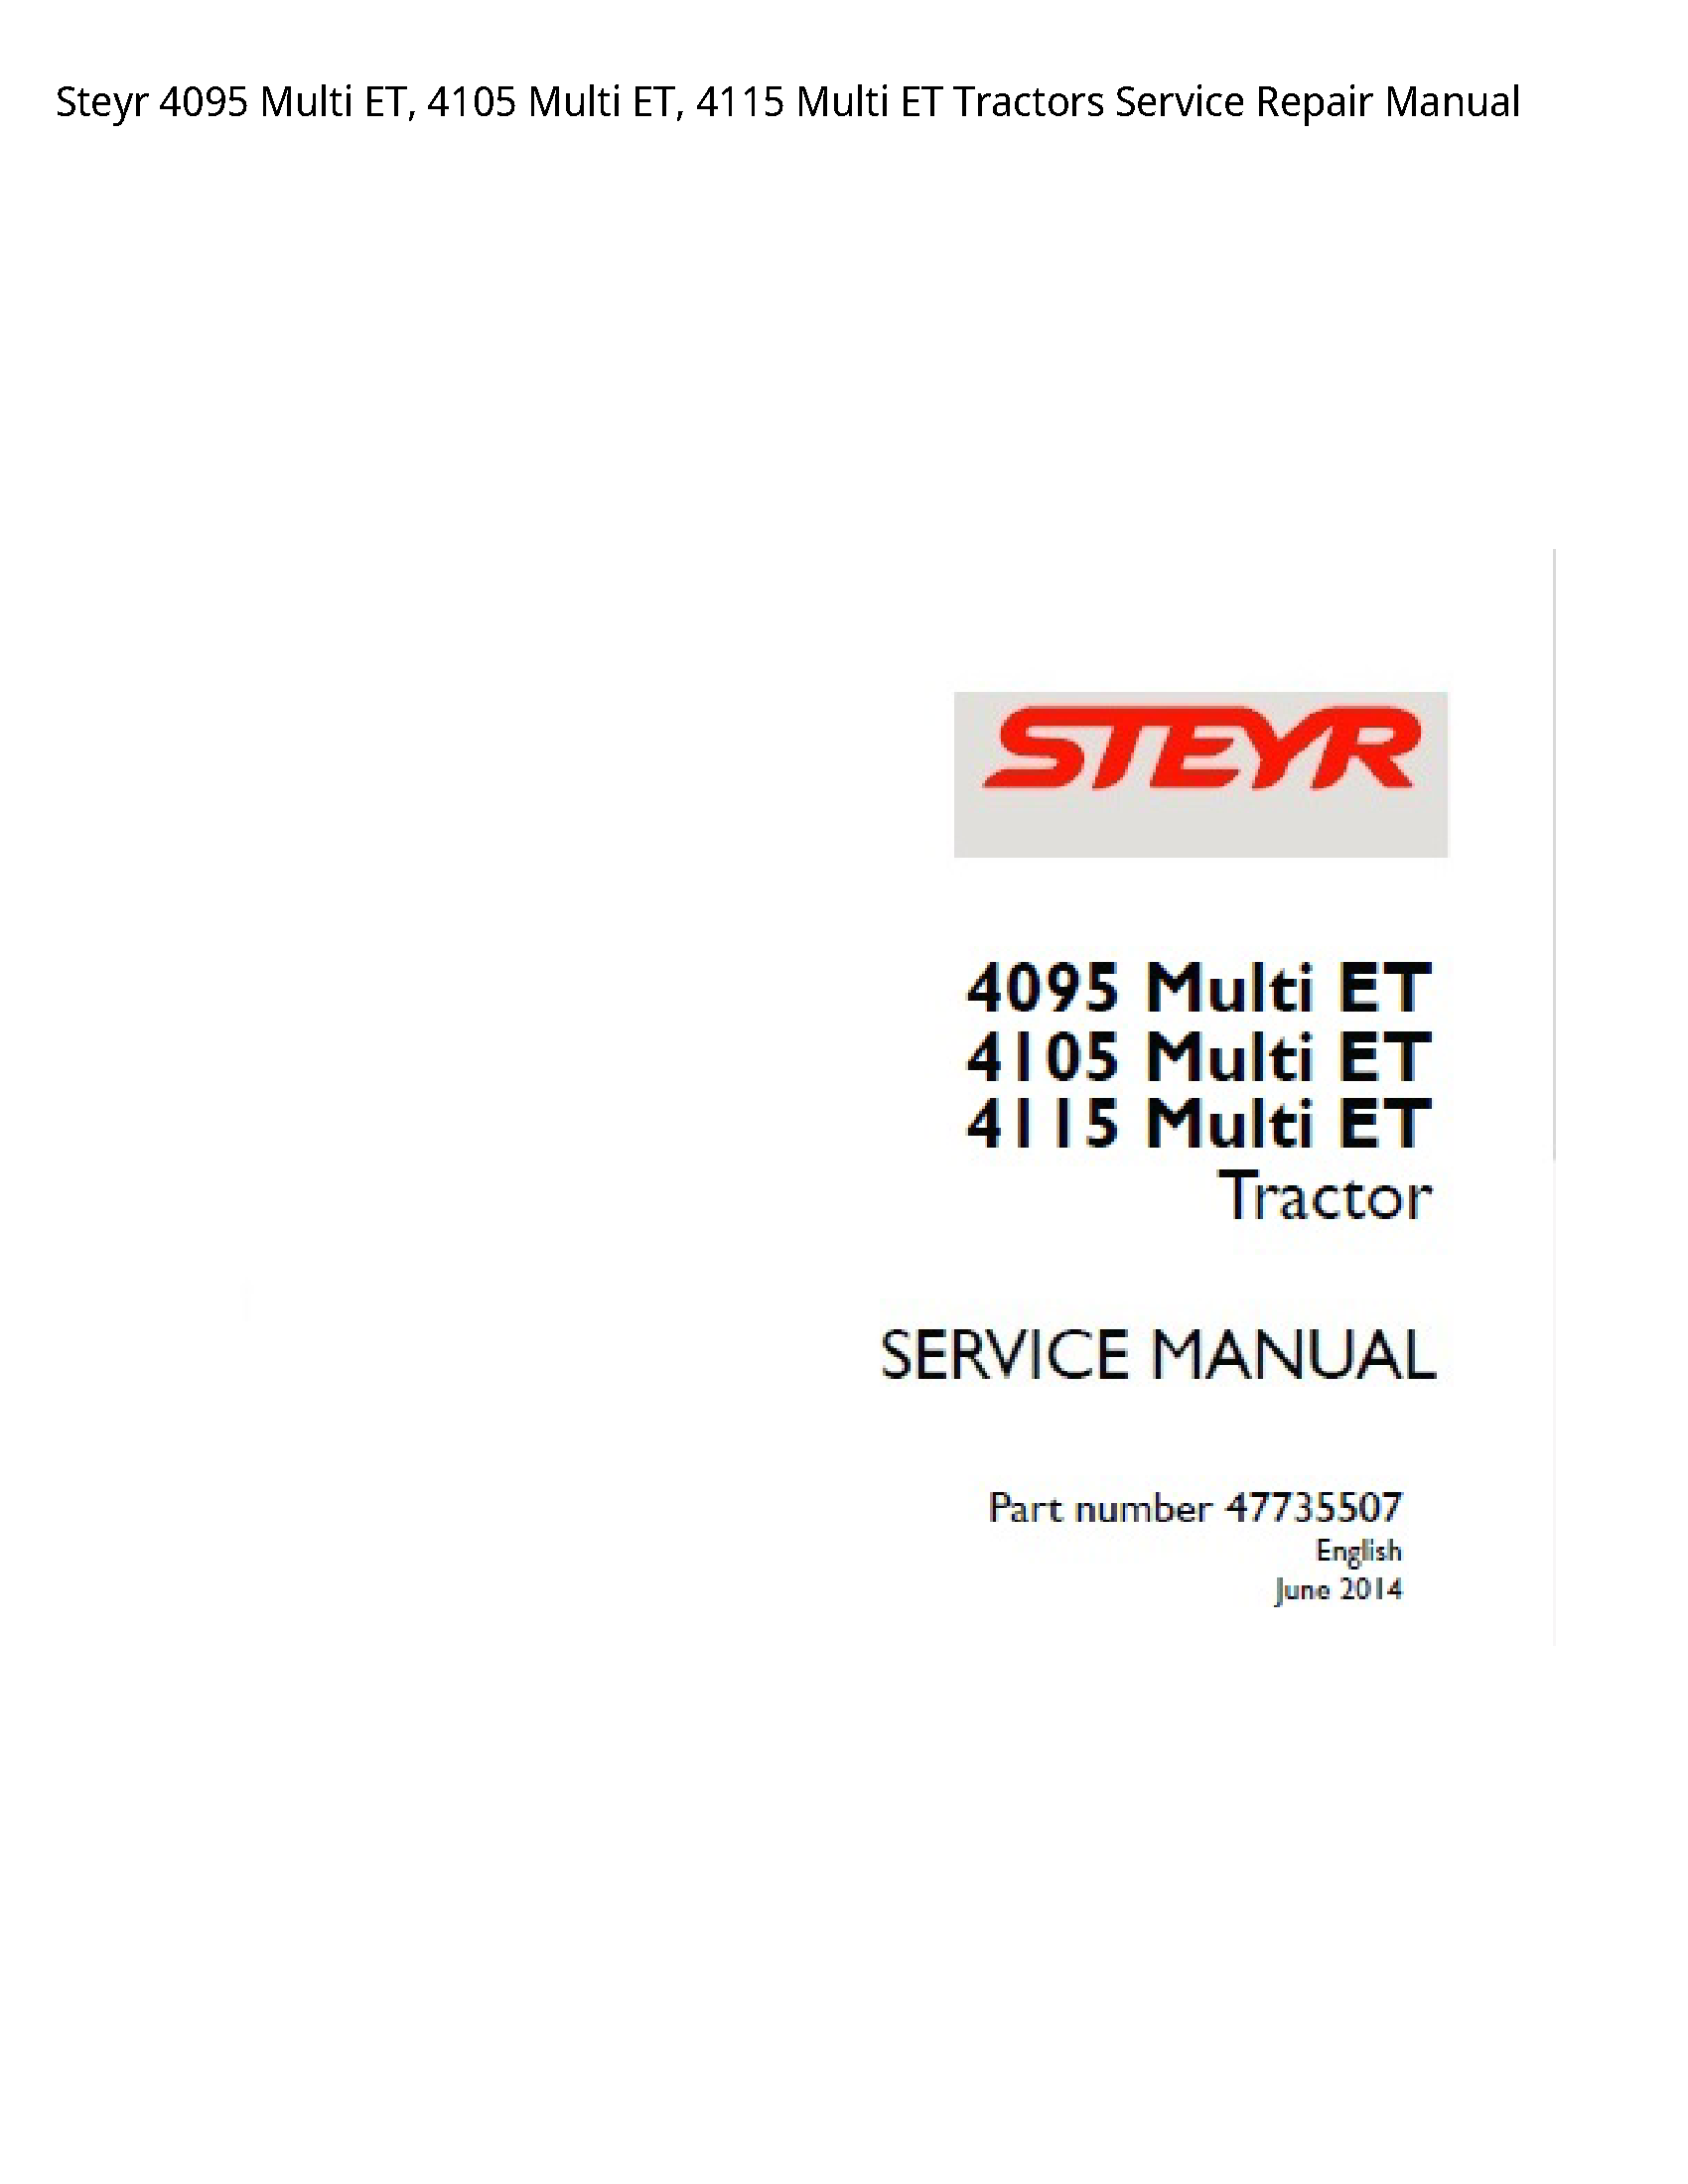 Steyr 4095 Multi ET manual